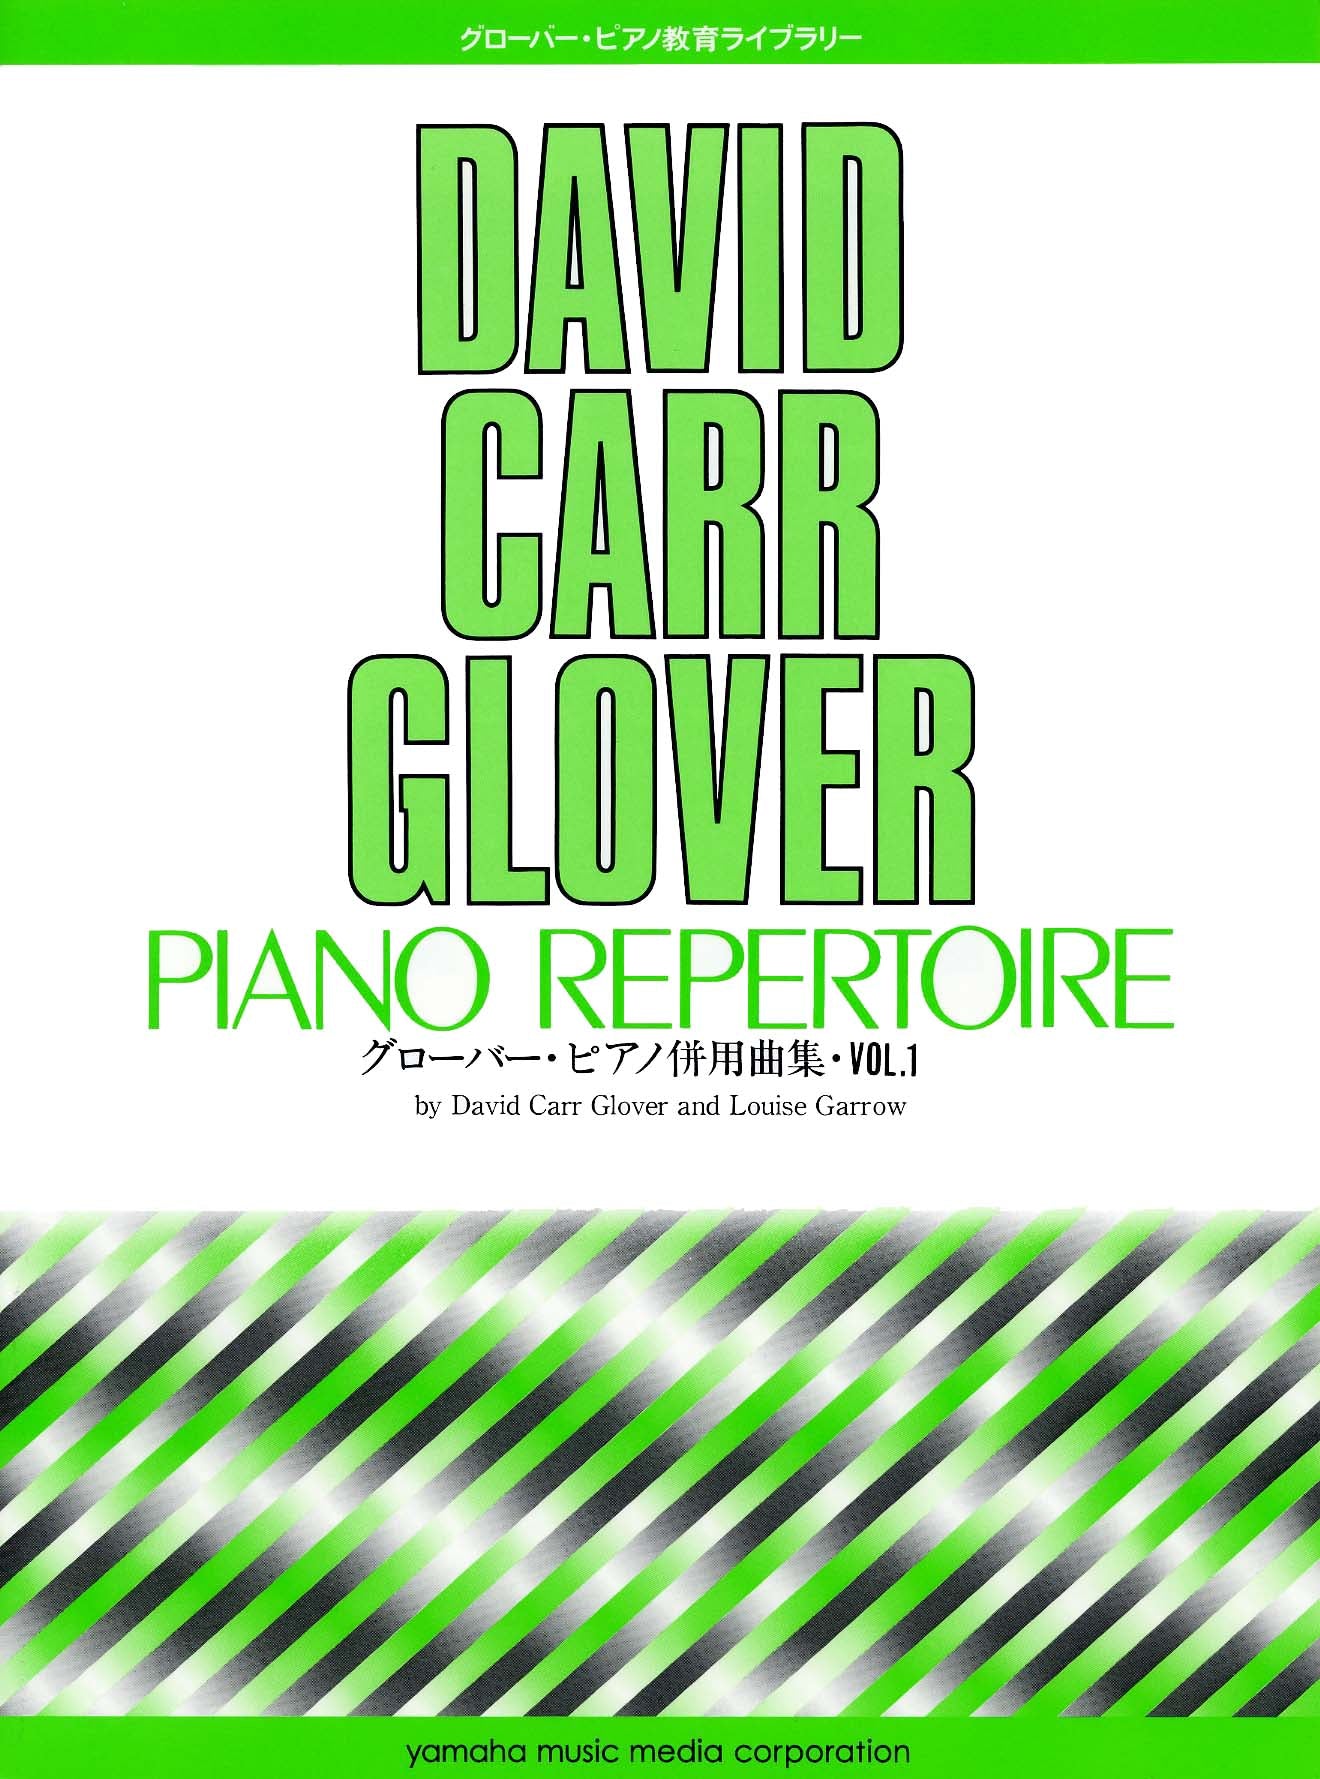 グローバー・ピアノ教育ライブラリー グローバー・ピアノ併用曲集 Vol.1